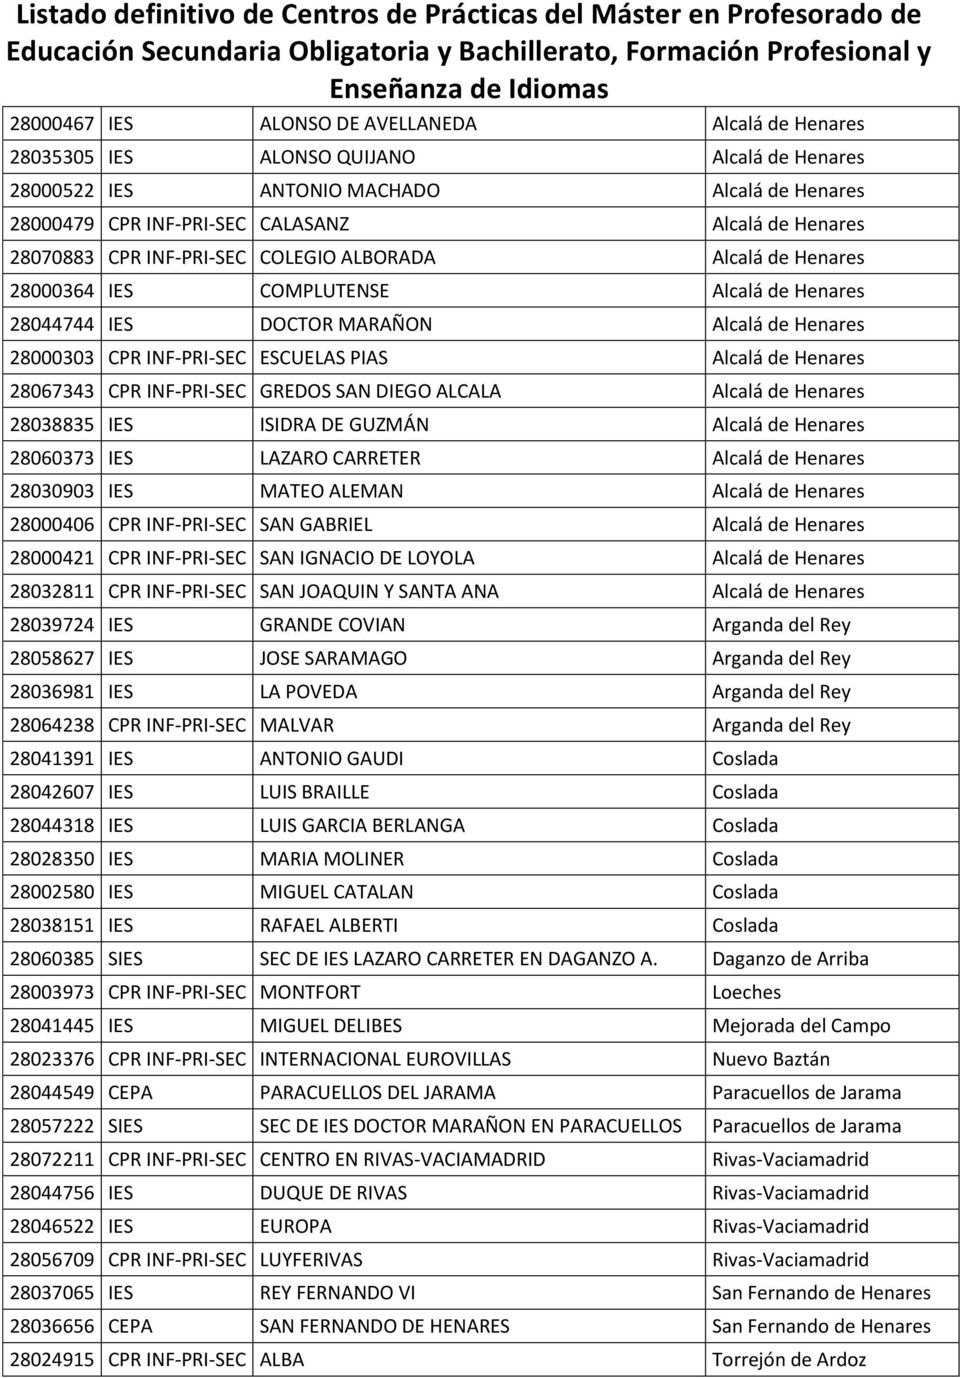 Henares 28067343 CPR INF-PRI-SEC GREDOS SAN DIEGO ALCALA Alcalá de Henares 28038835 IES ISIDRA DE GUZMÁN Alcalá de Henares 28060373 IES LAZARO CARRETER Alcalá de Henares 28030903 IES MATEO ALEMAN